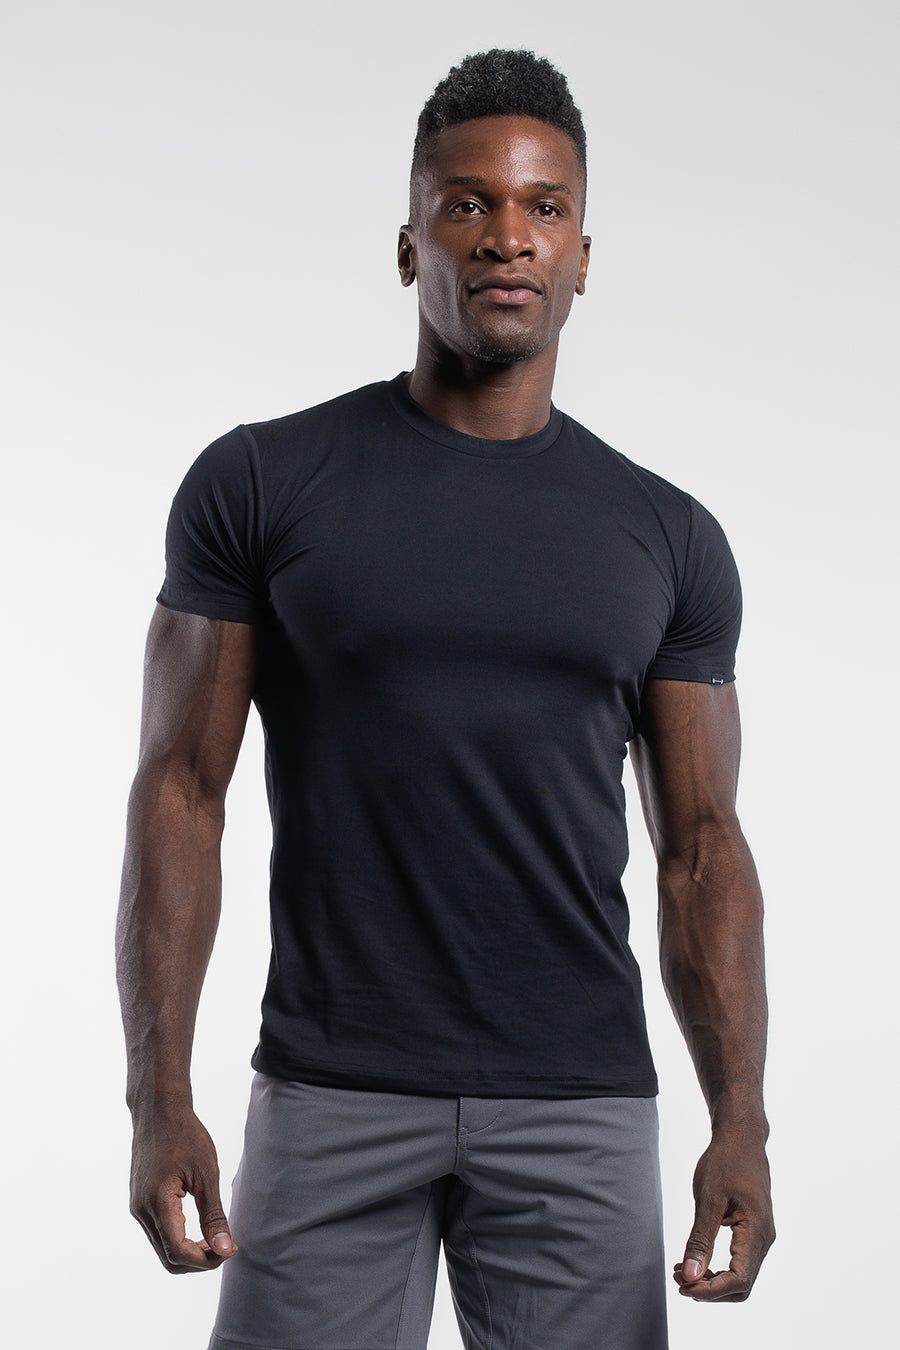 Details about   Mens averages compression t shirt 